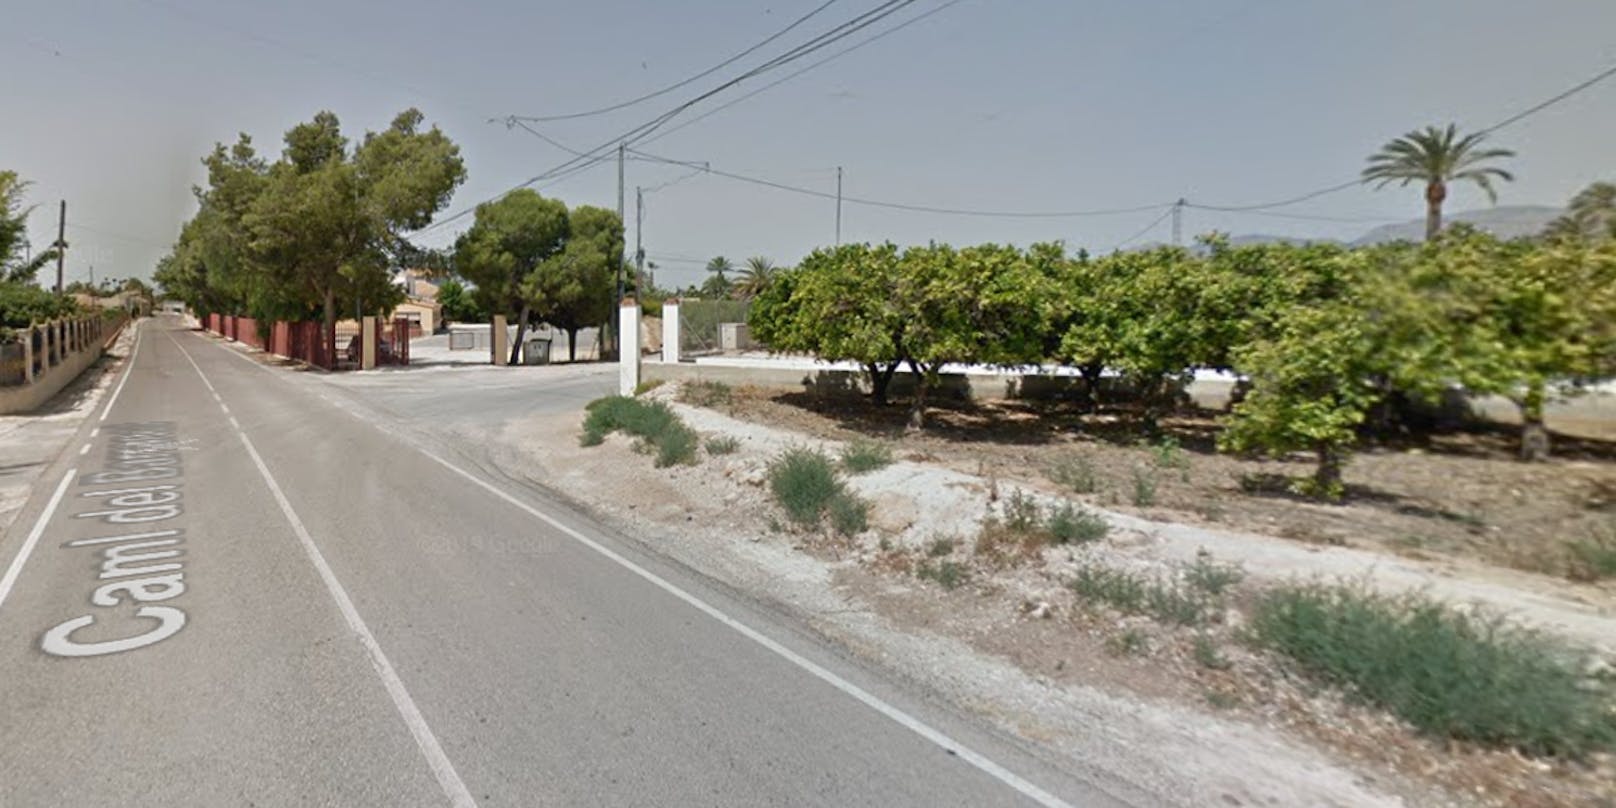 In der Ortschaft Algoda bei Elche in Spanien hat ein 15-Jähriger nach einem Streit wegen schlechter Schulnoten seine Eltern und seinen kleinen Bruder erschossen.